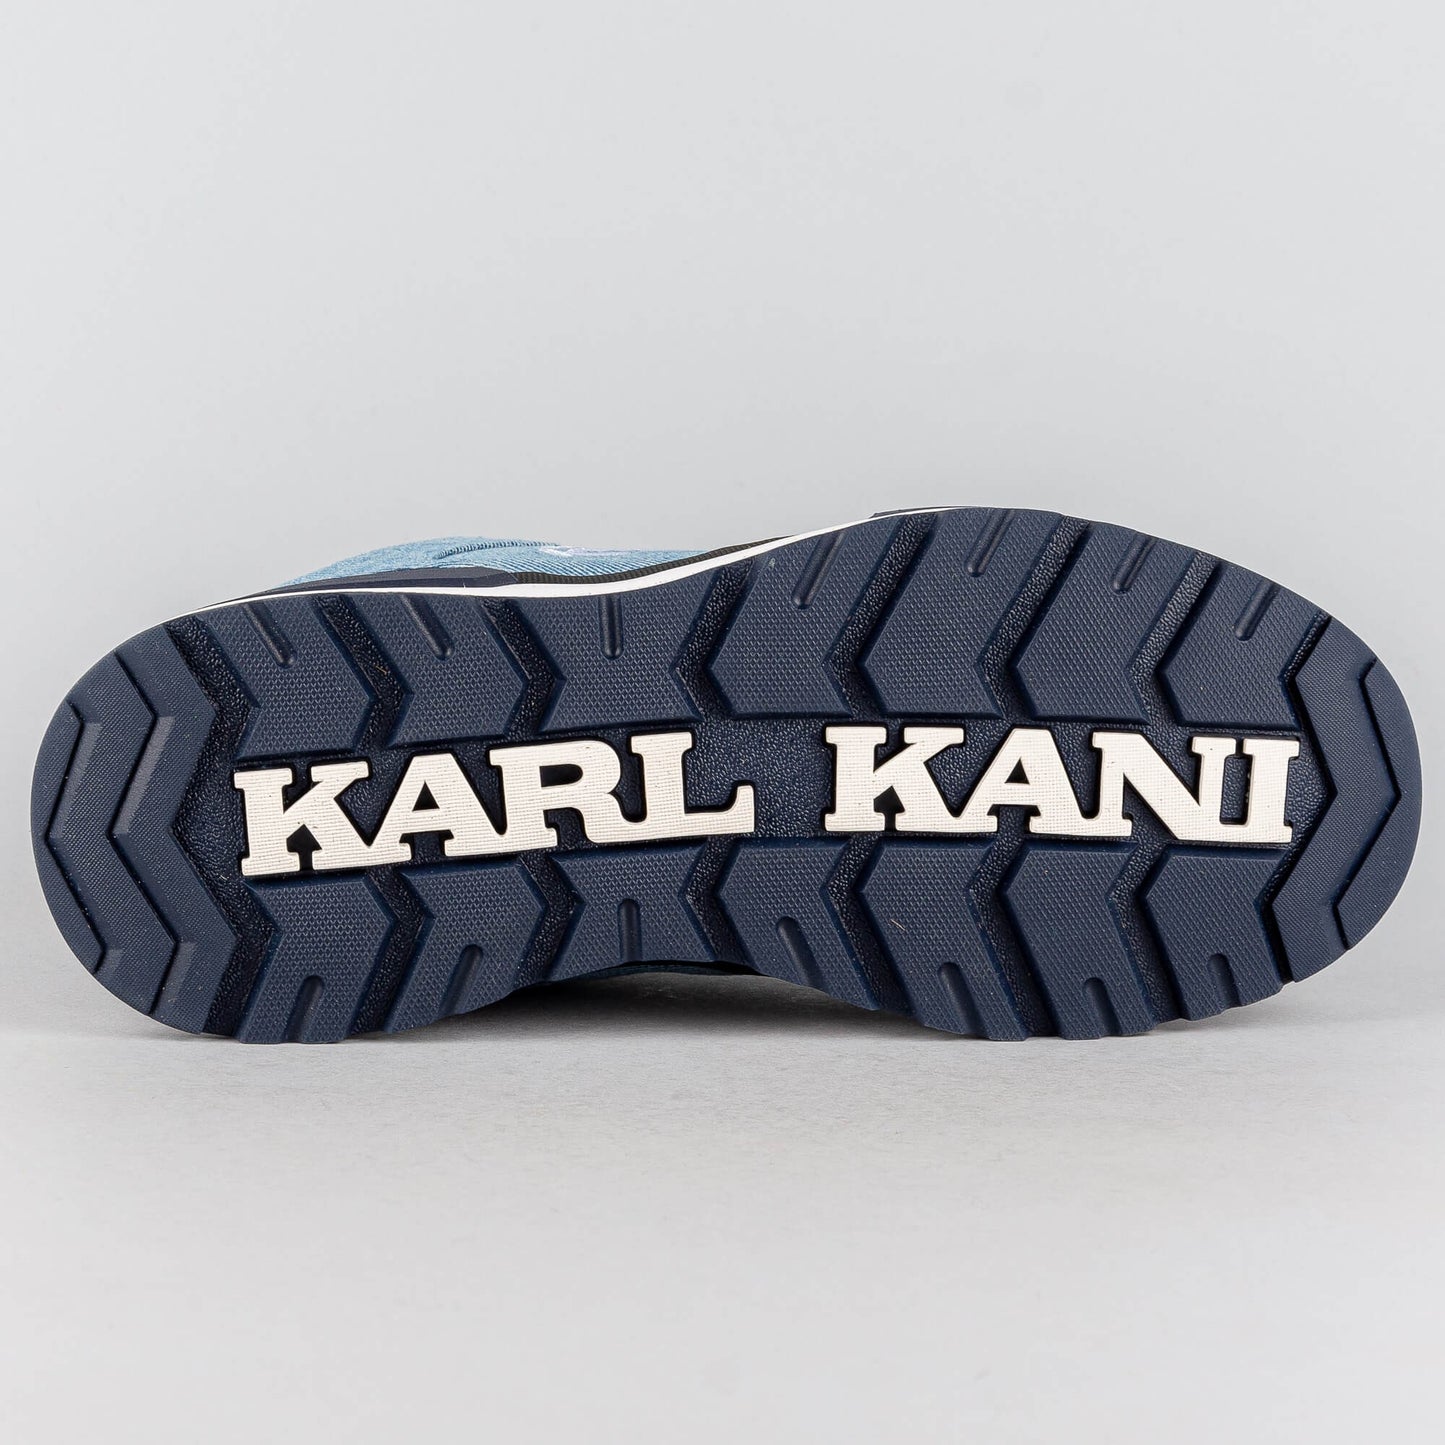 Karl Kani KK LXRY Boot denim/blue